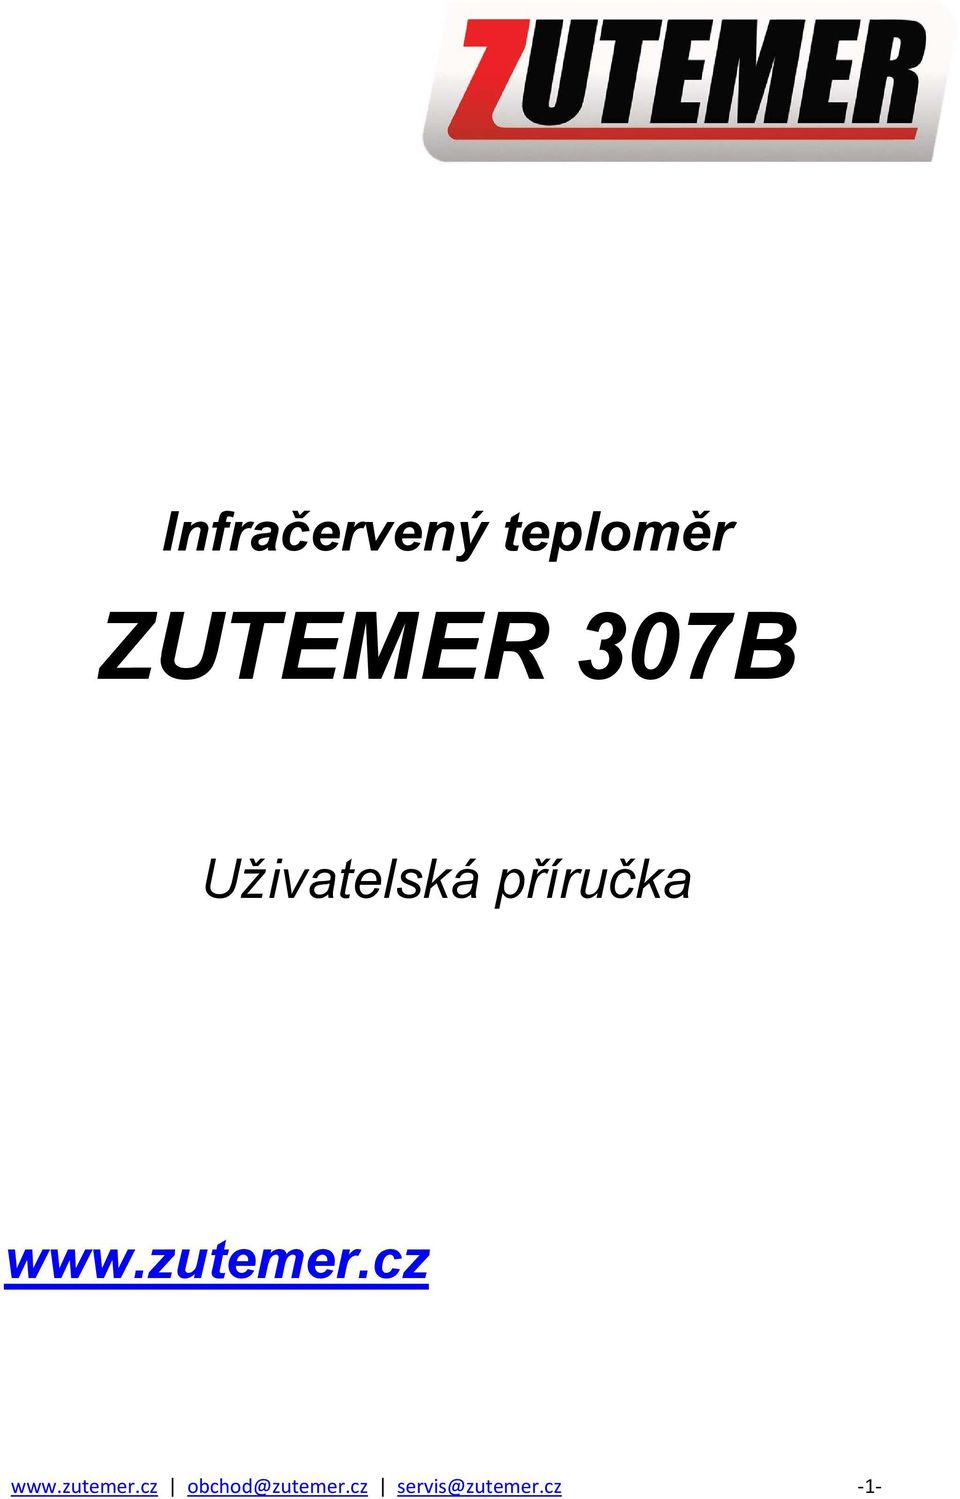 zutemer.cz www.zutemer.cz obchod@zutemer.